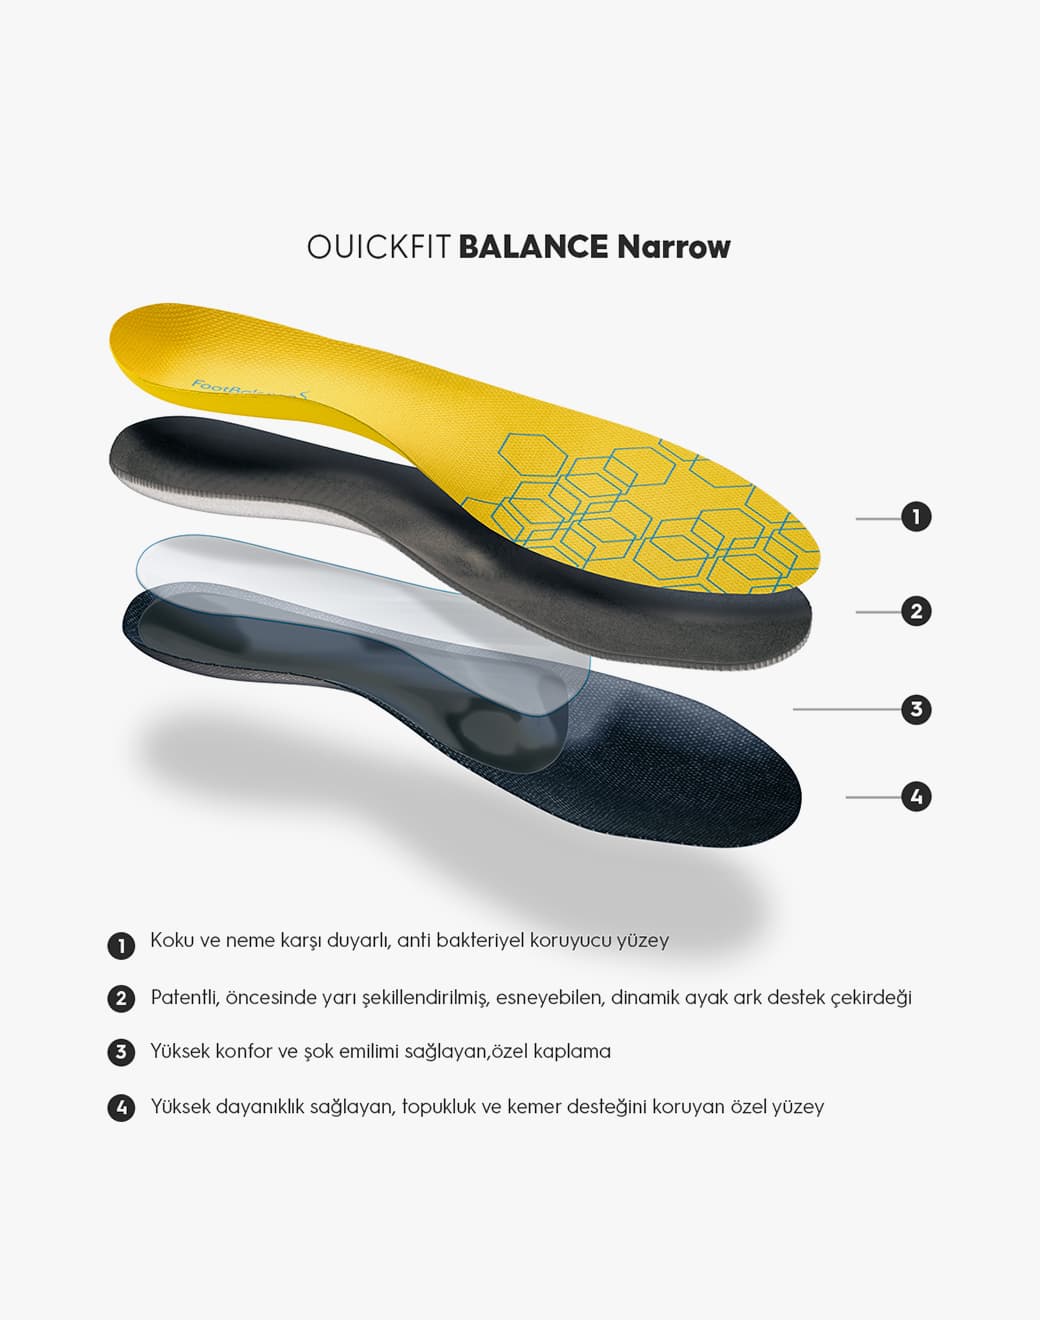 QUICKFIT BALANCE narrow - kişiye özel ortopedik tabanlık - Stilefit